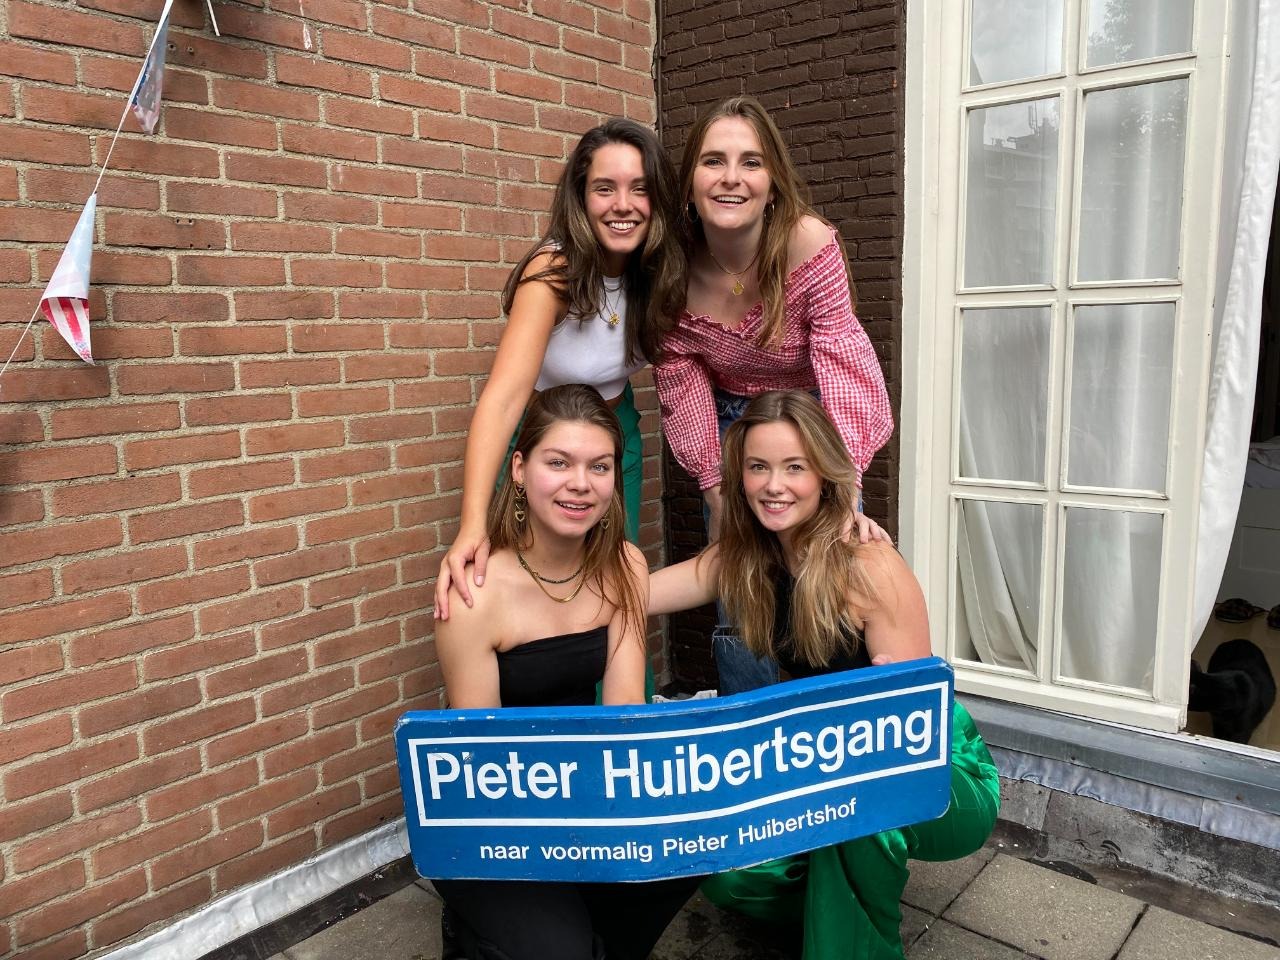 Pieter Huibertsgang